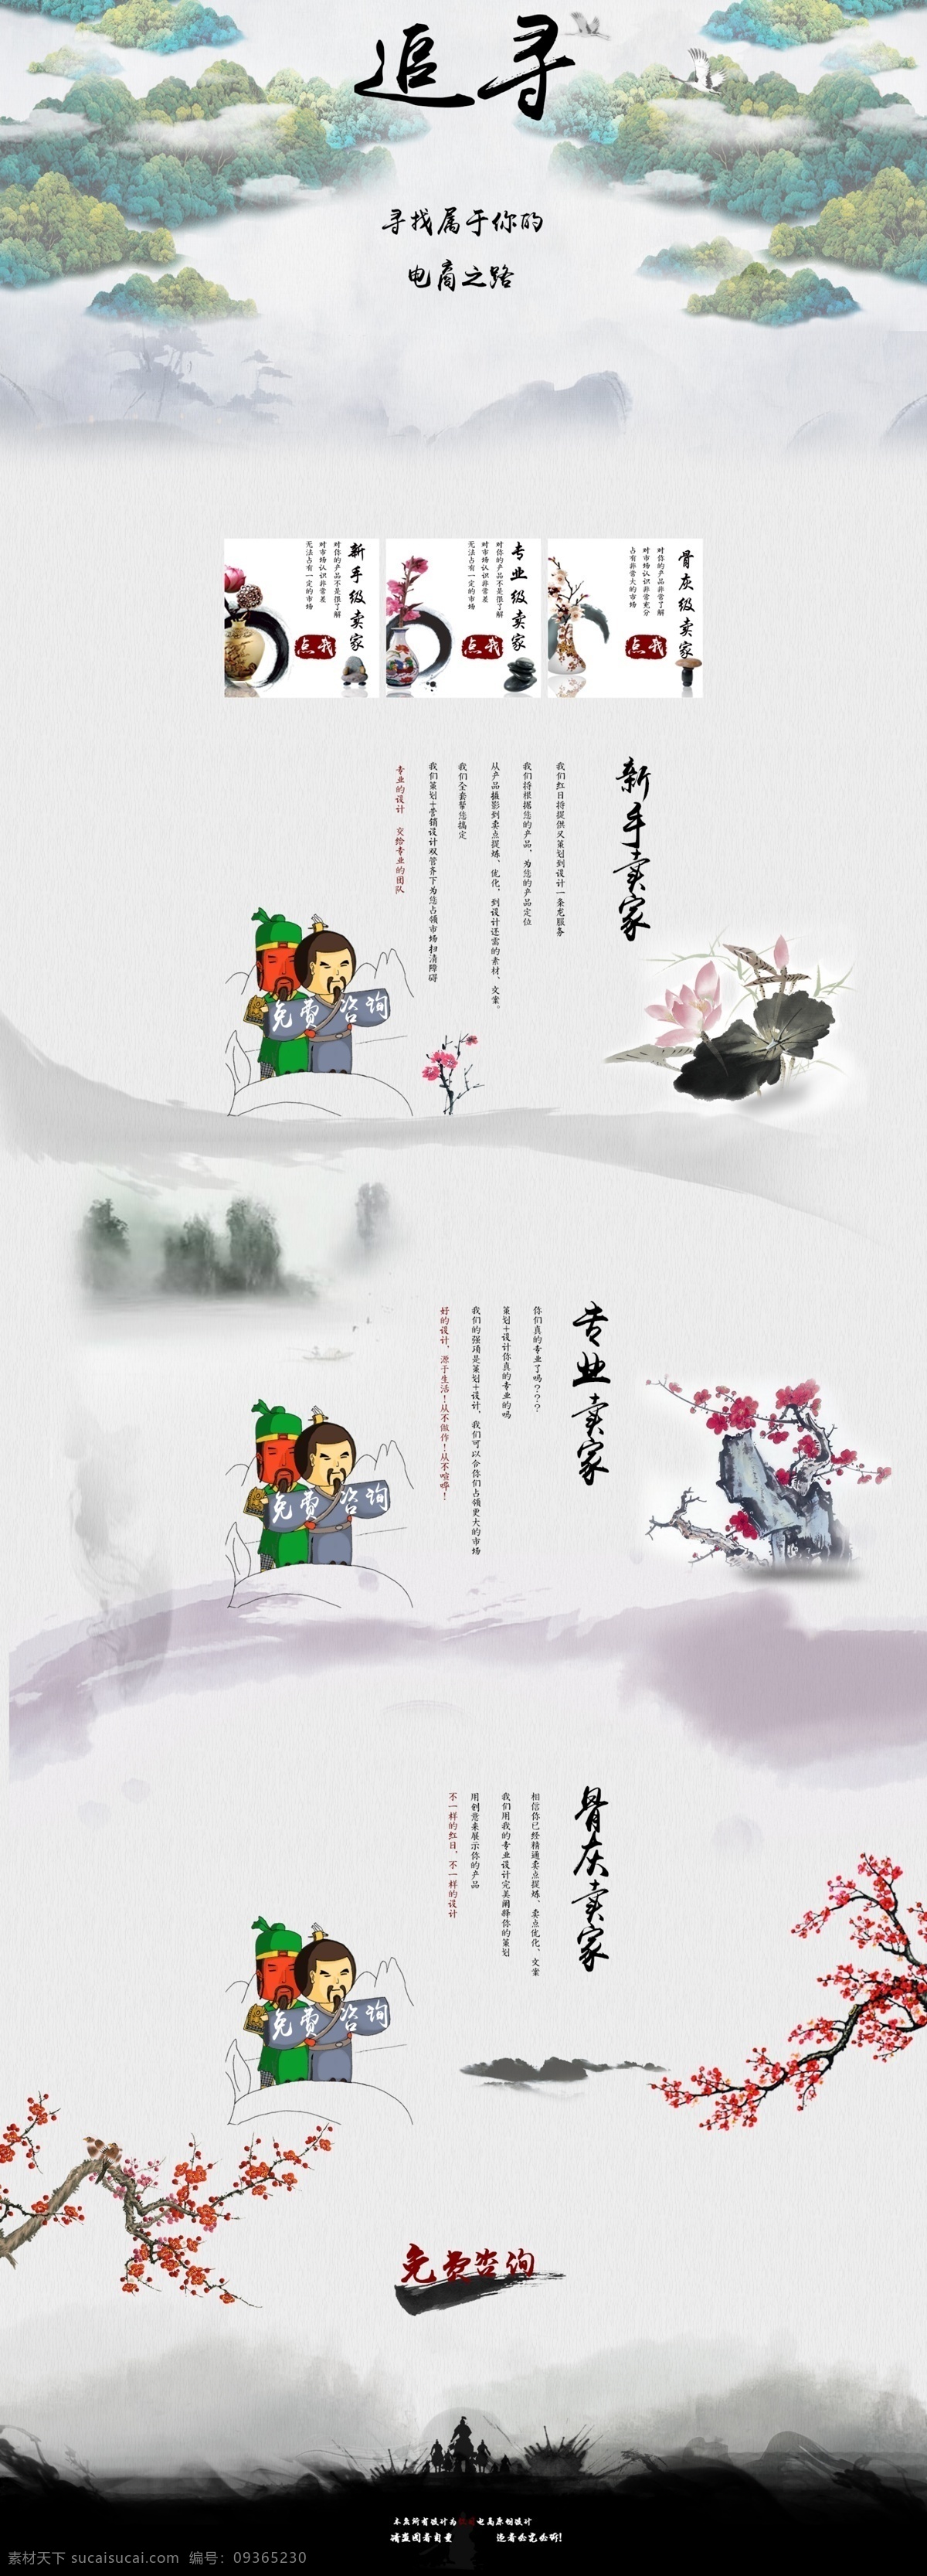 策划设计 主题 页 三国风 中国风 追寻 水墨风 创意设计 白色